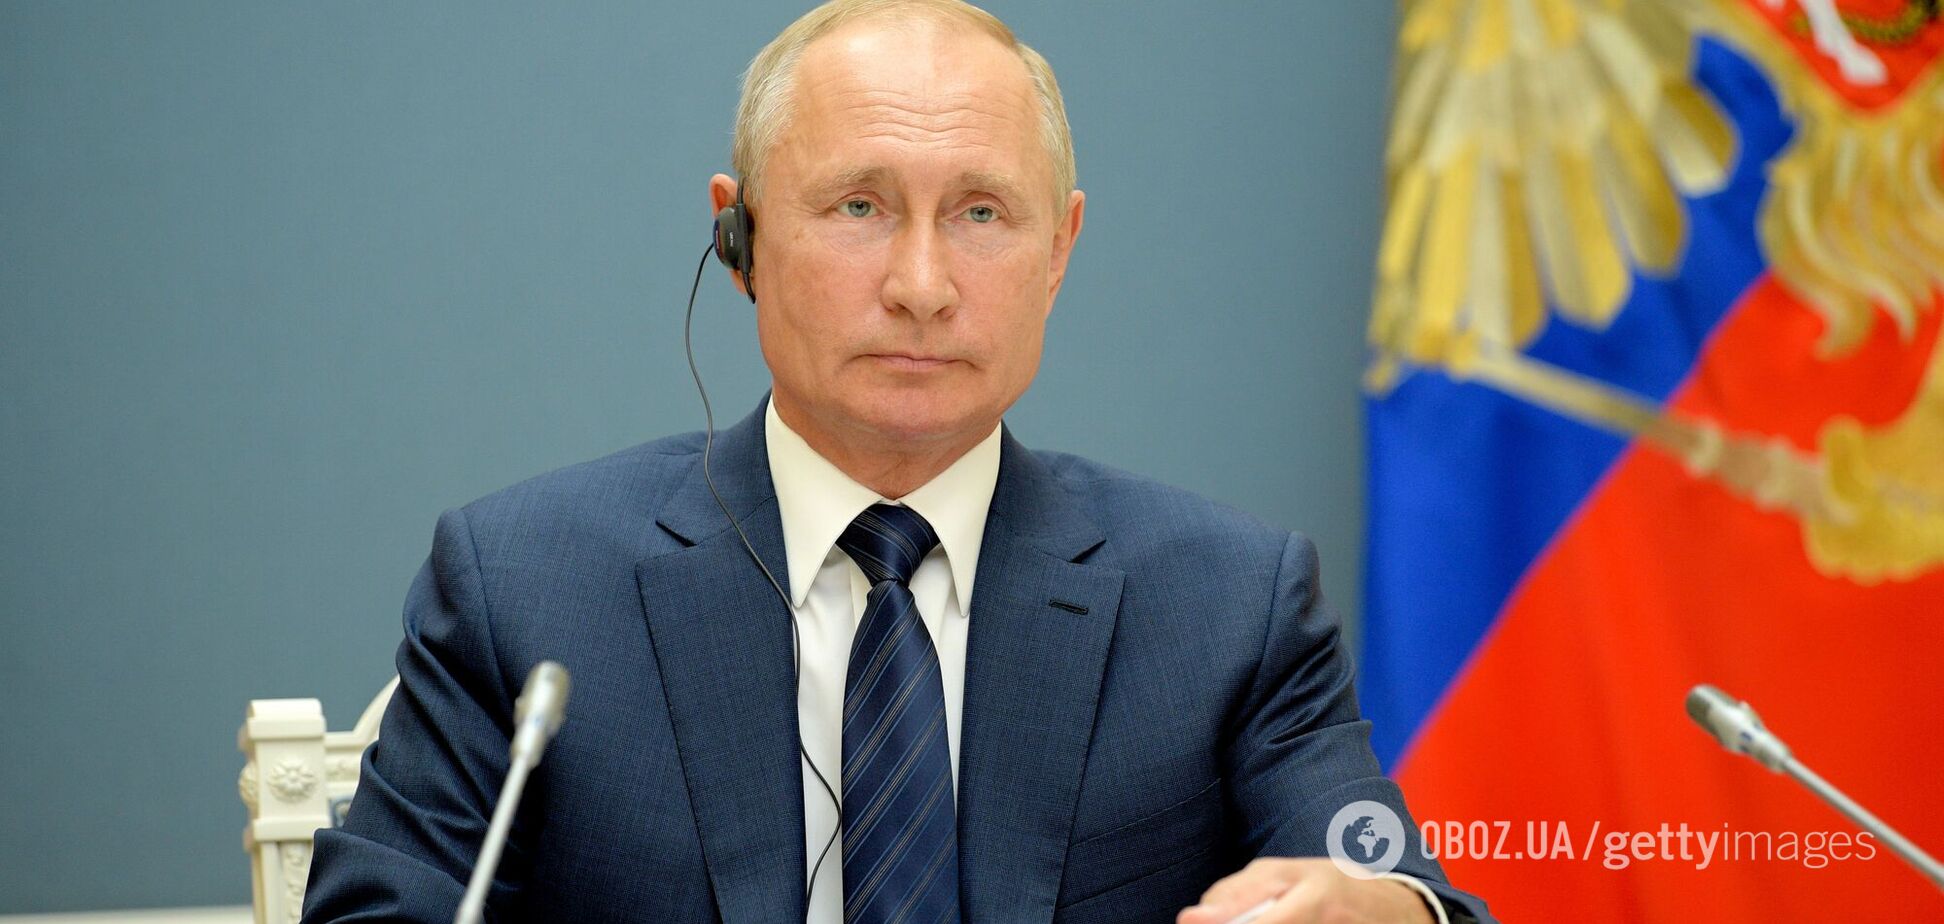 Навіщо Путін каже про готовність до переговорів із Україною?